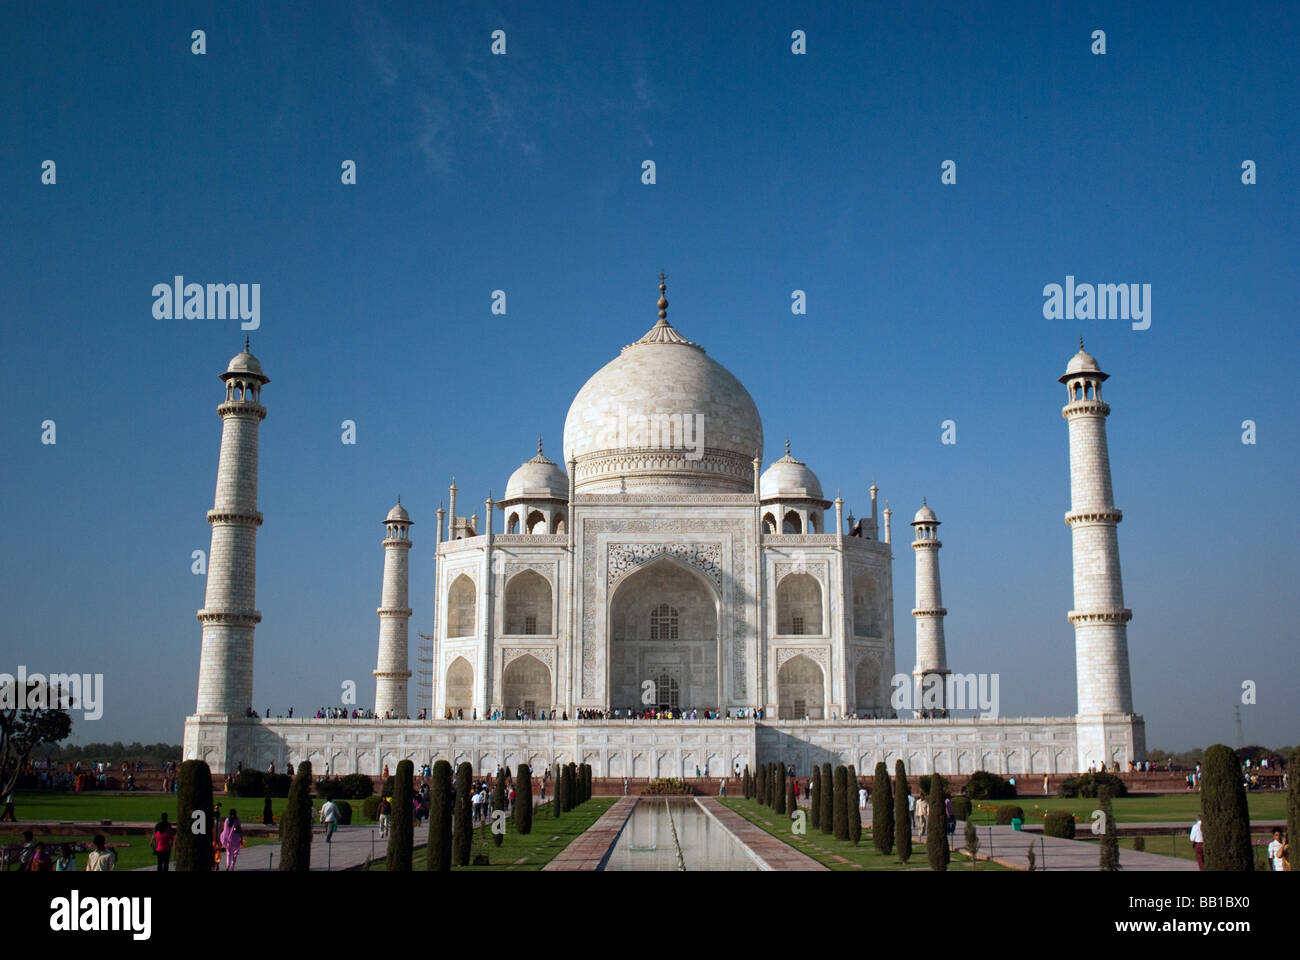 Das Taj Mahal (ताज महल) ist ein Mausoleum befindet sich in Agra, Indien und der berühmteste und schönste Gebäude der Welt. Stockfoto